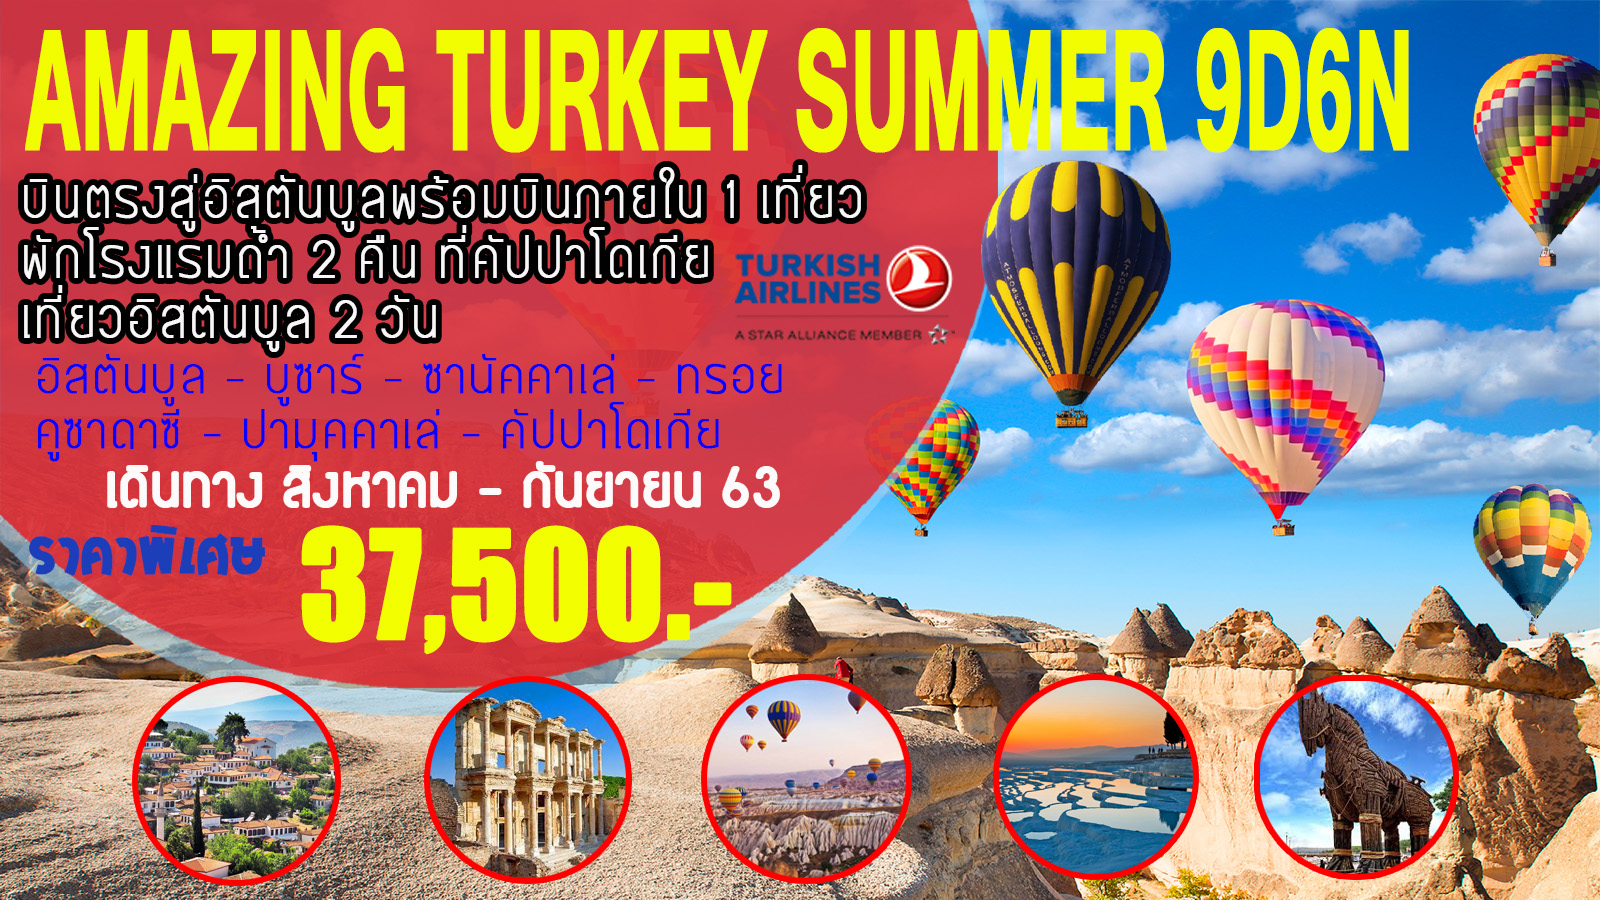 ทัวร์ตรุกี Amazing Turkey Summer 9D6N (AUG-SEP20)